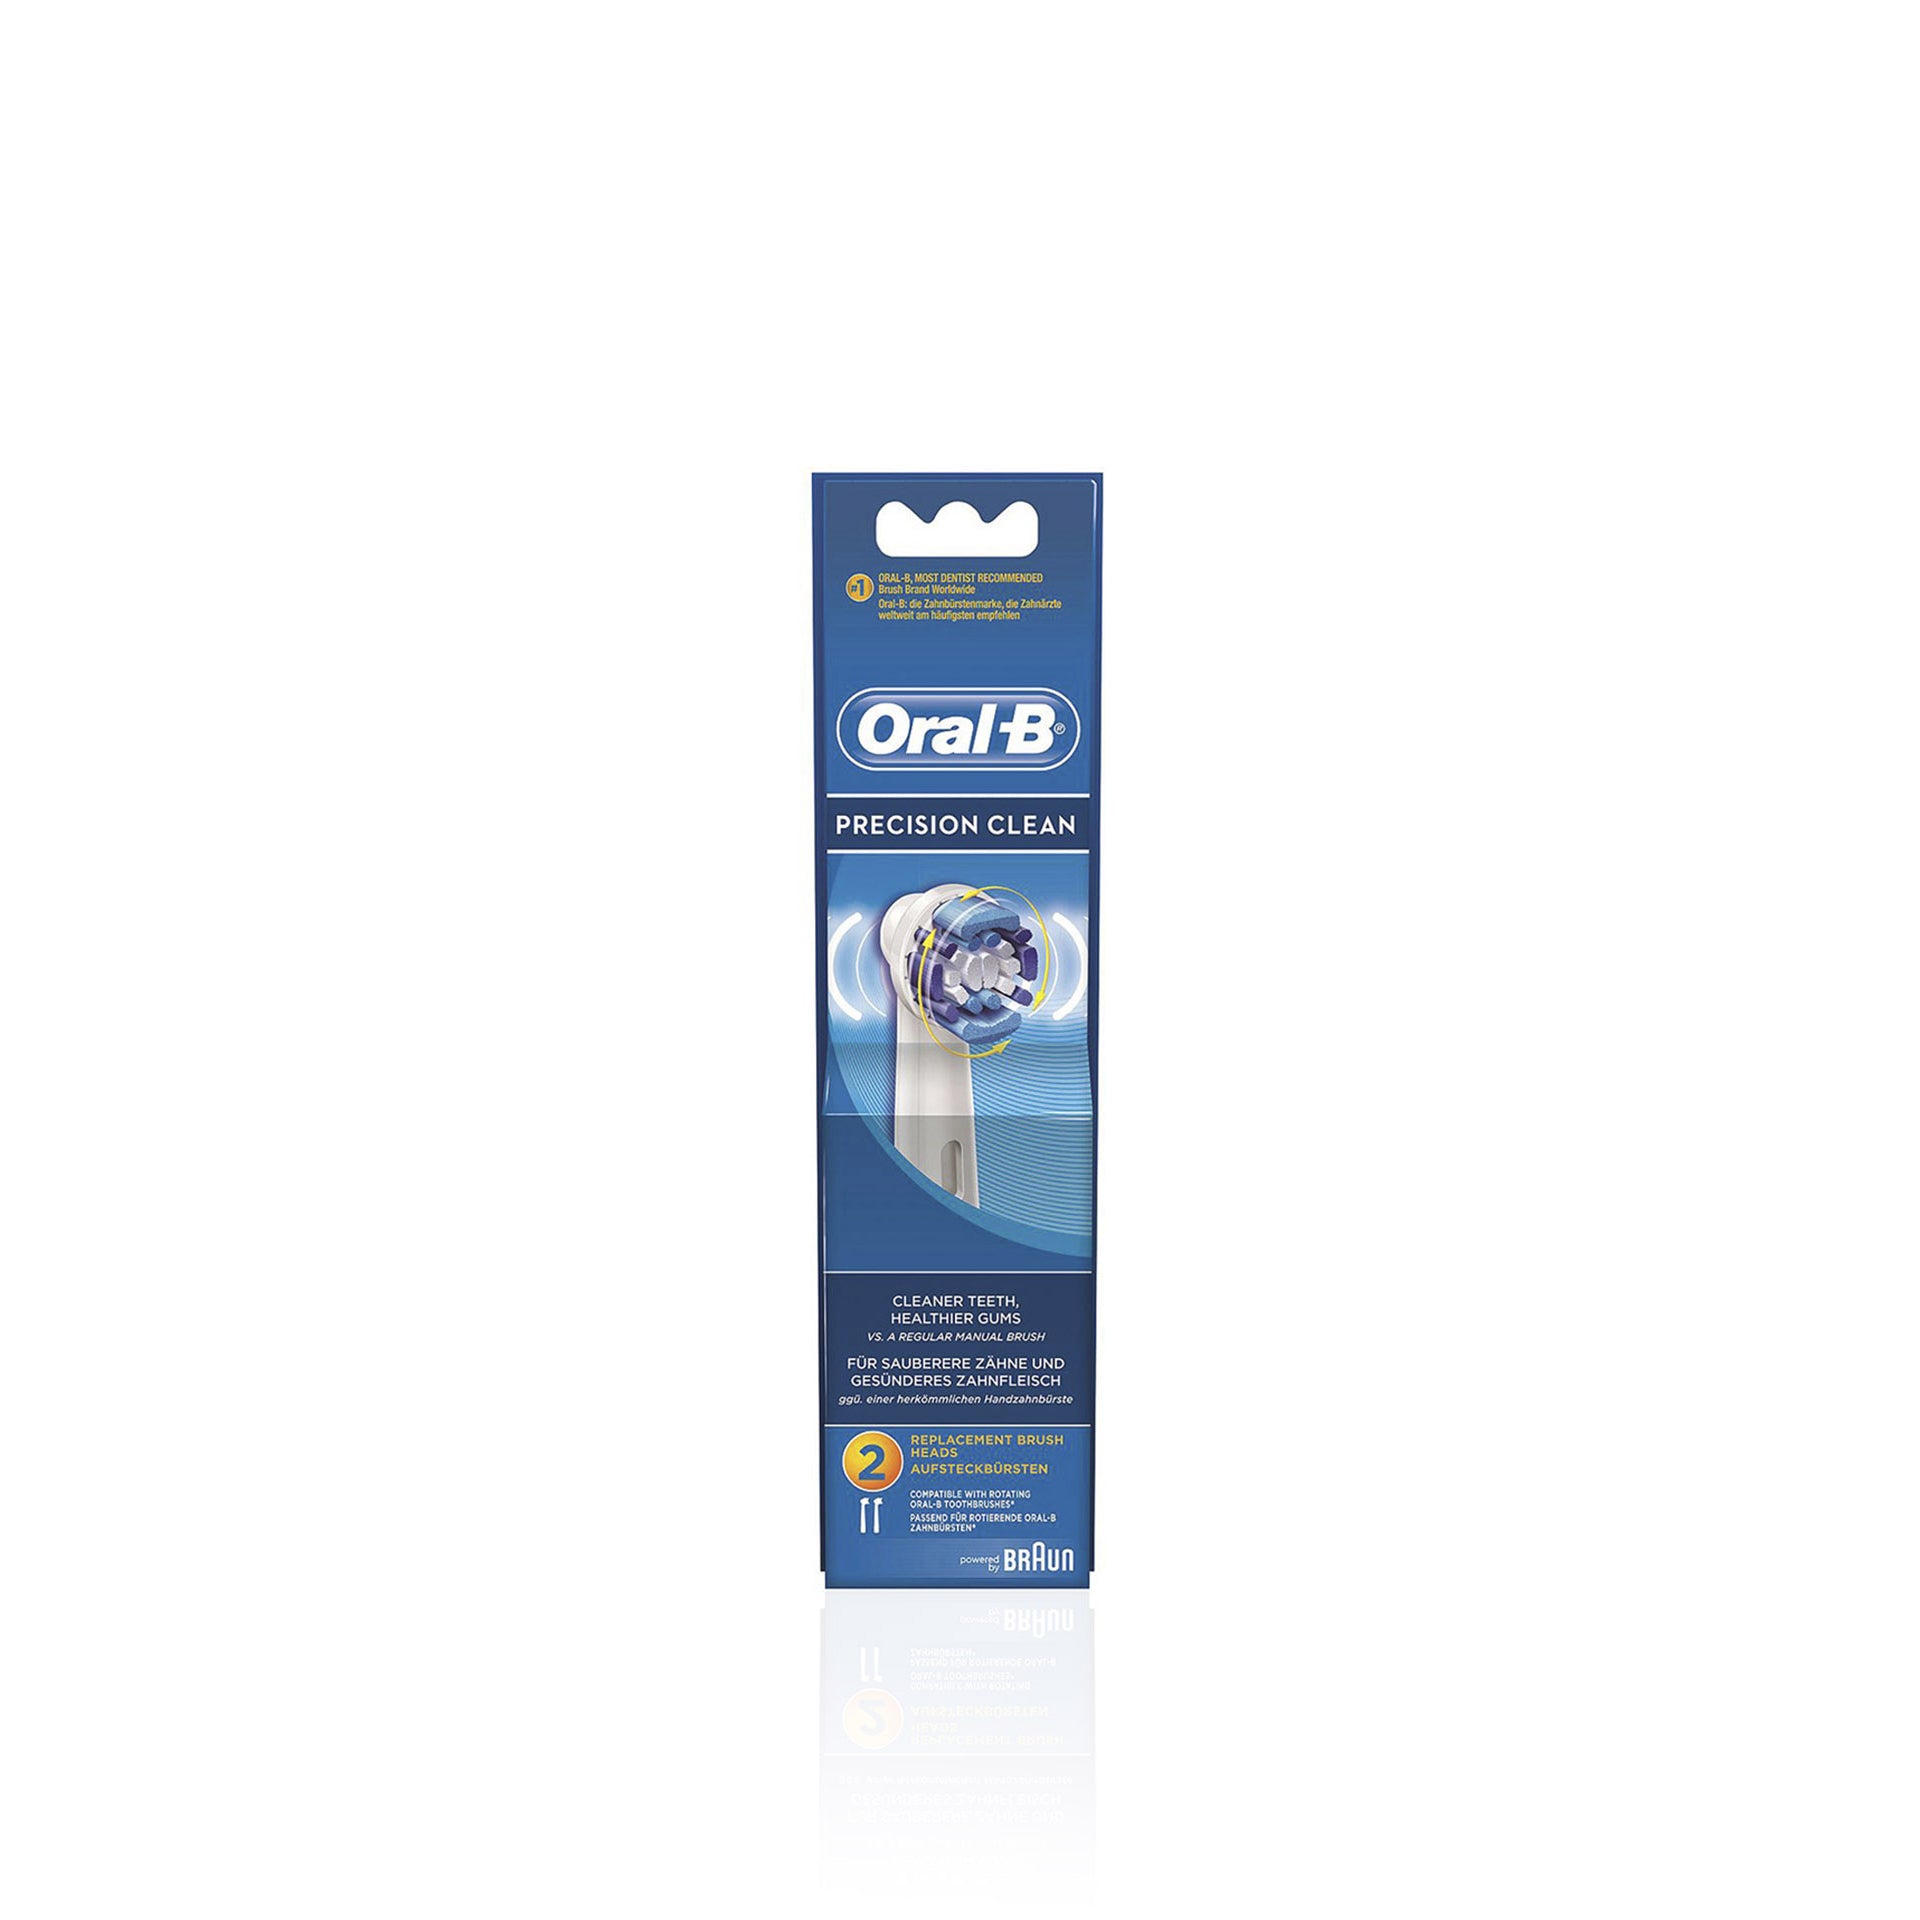 Oral-B Precision Clean Cepillo Eléctrico Recambio 2 uds - Pack 2 x 2 uds